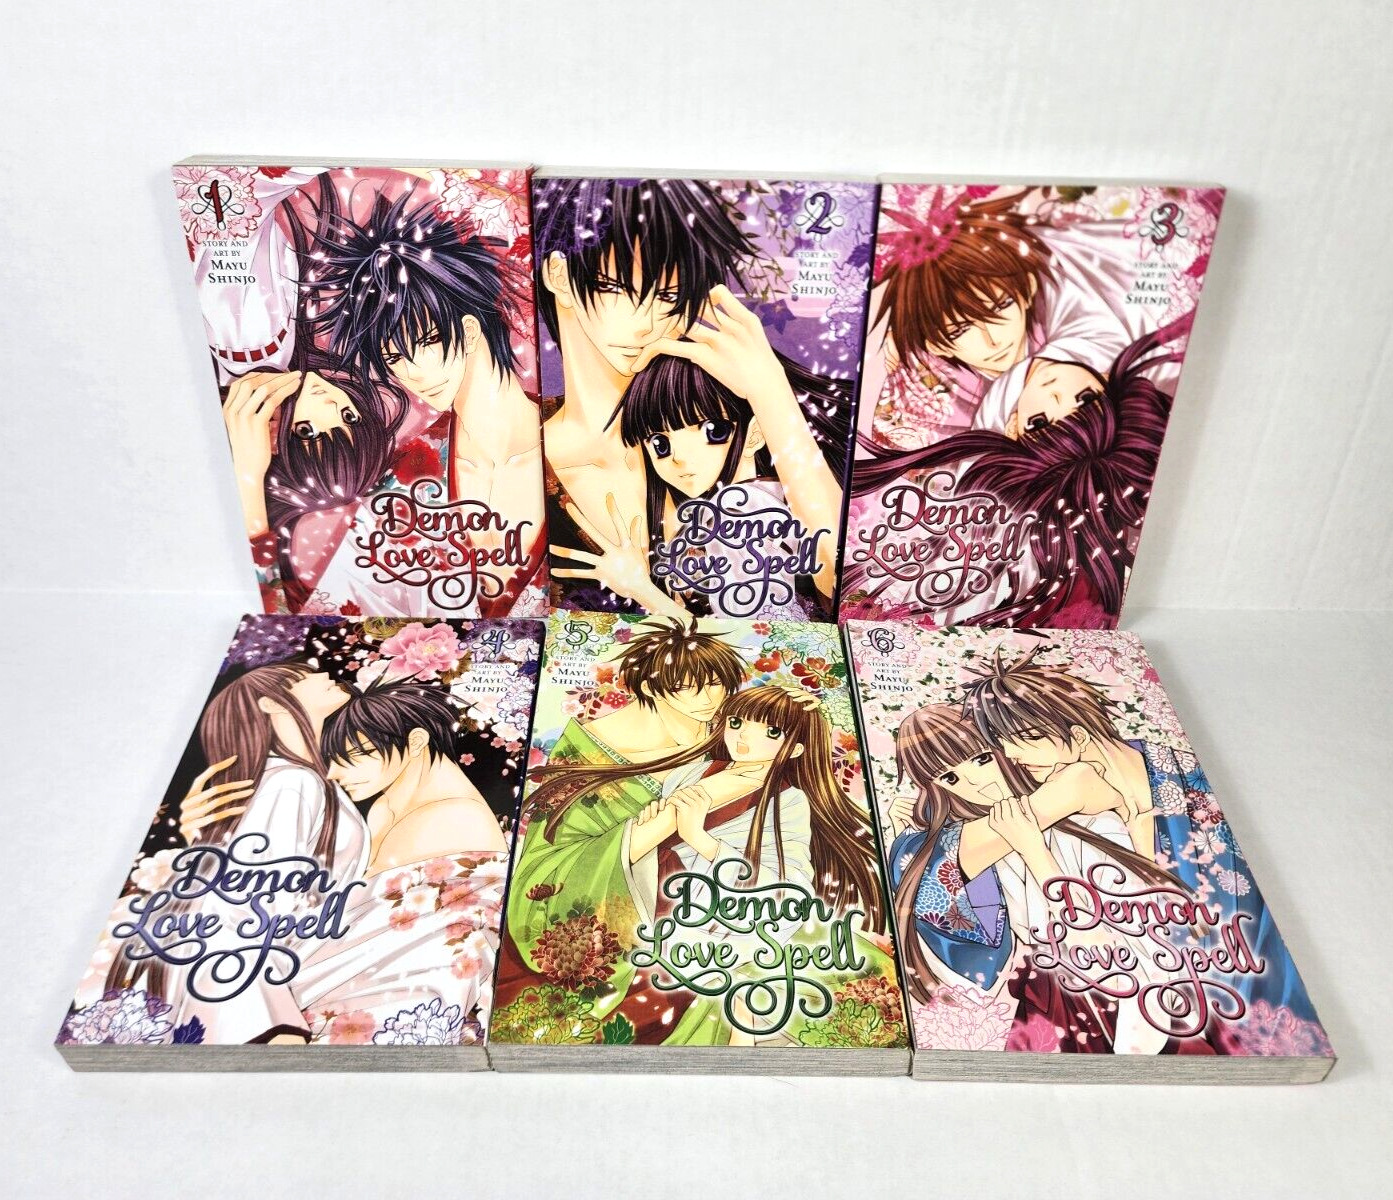 Demon Love Spell Manga Complete Series Vol 1-6 English 1st Printings Mayu Shinjo